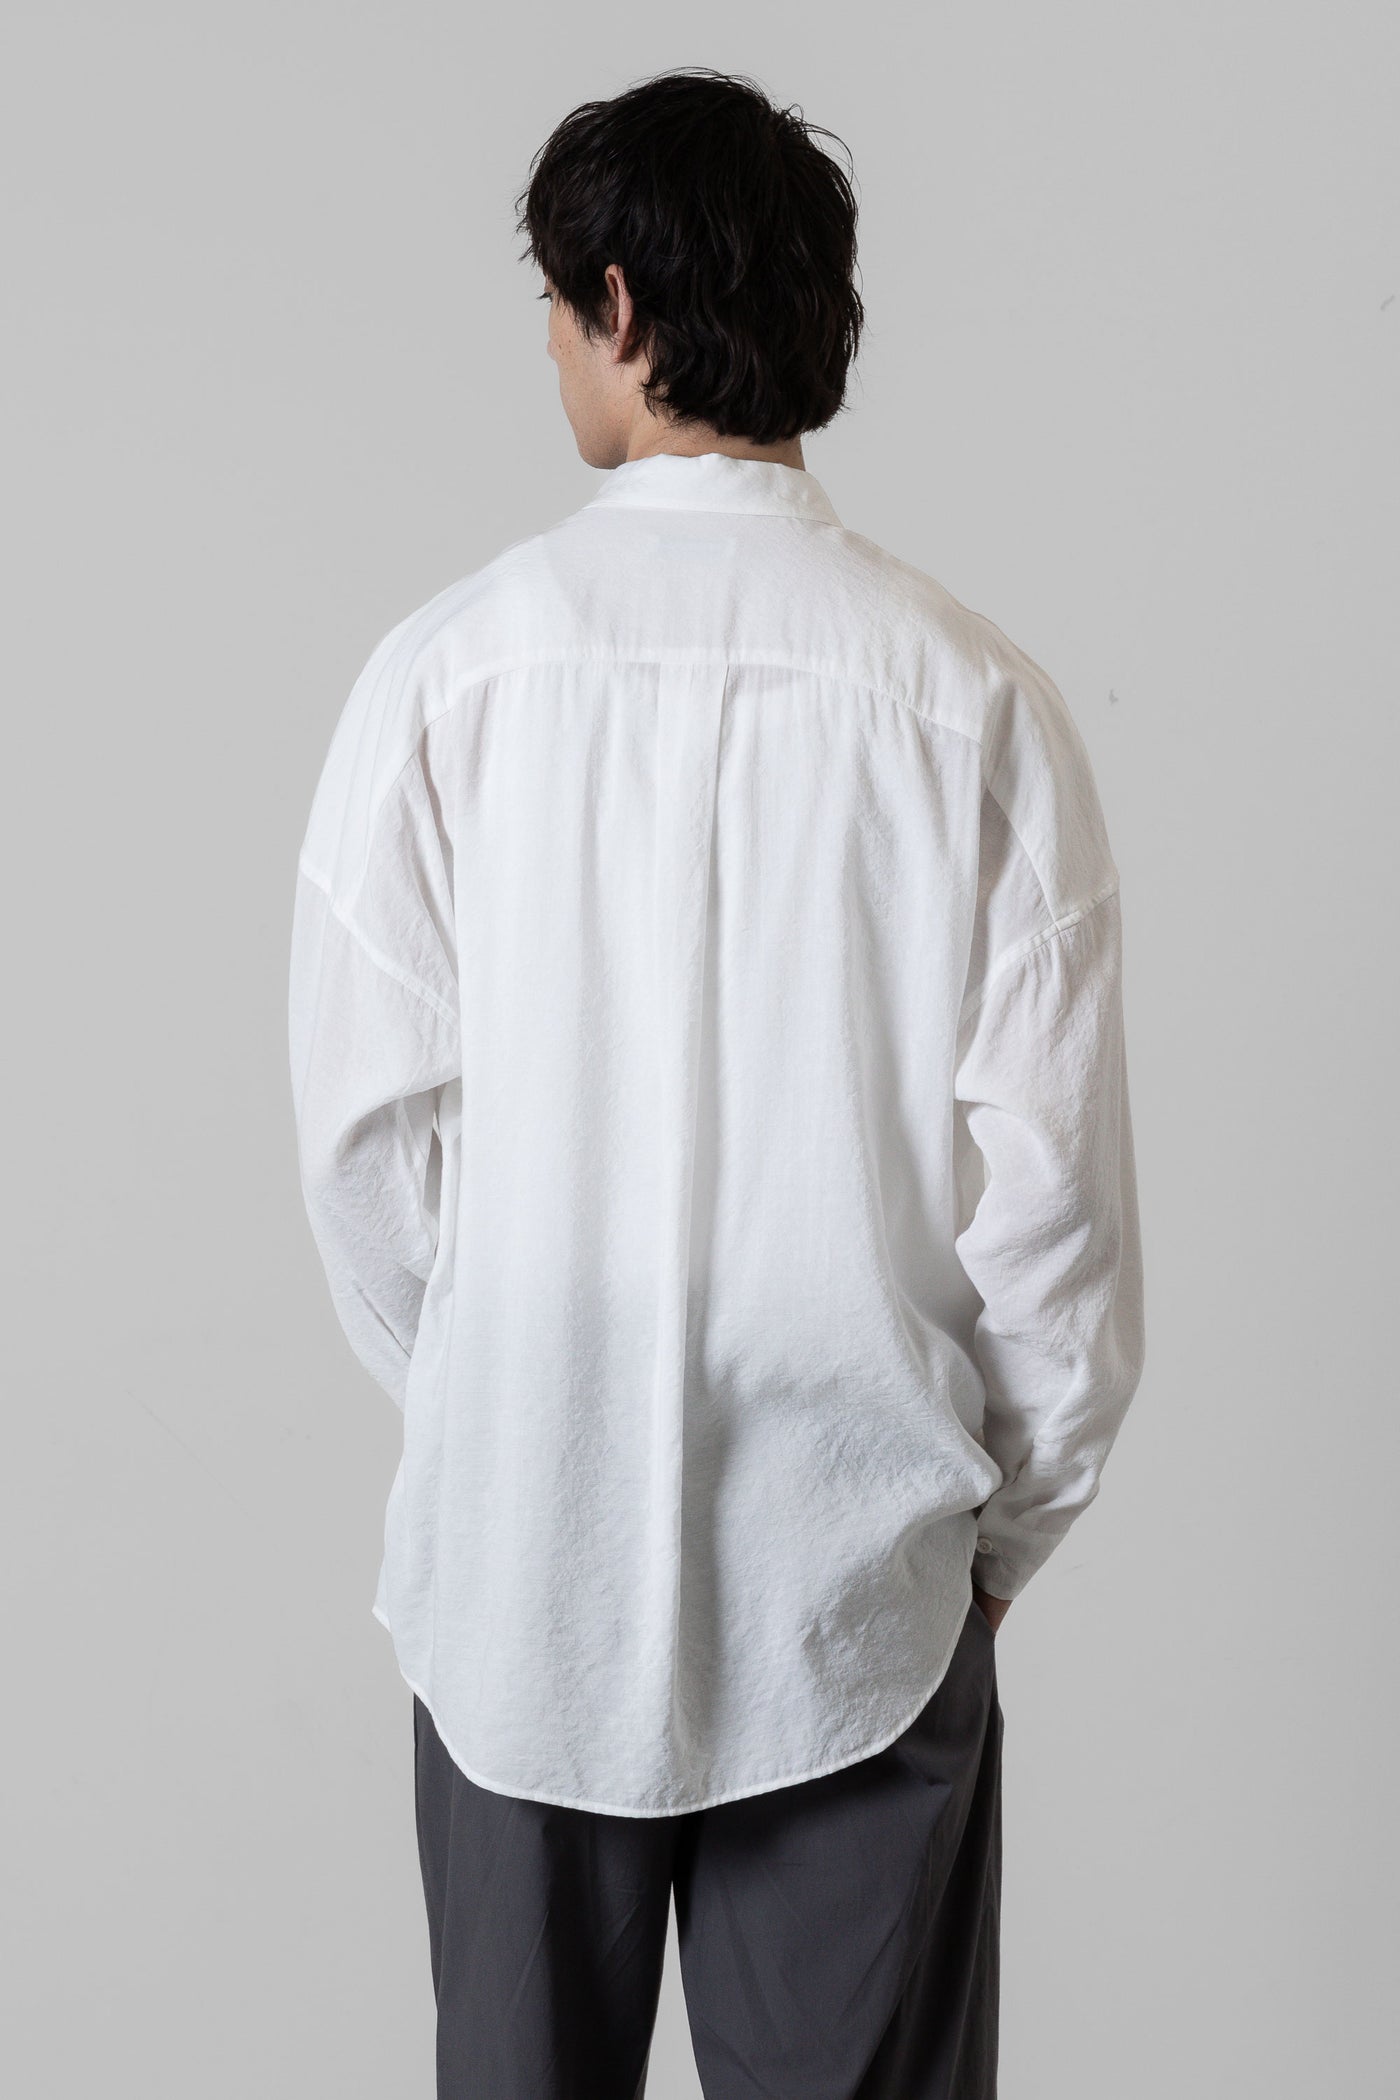 AS41-012 レーヨン/ナイロンローン オーバーサイズシャツ